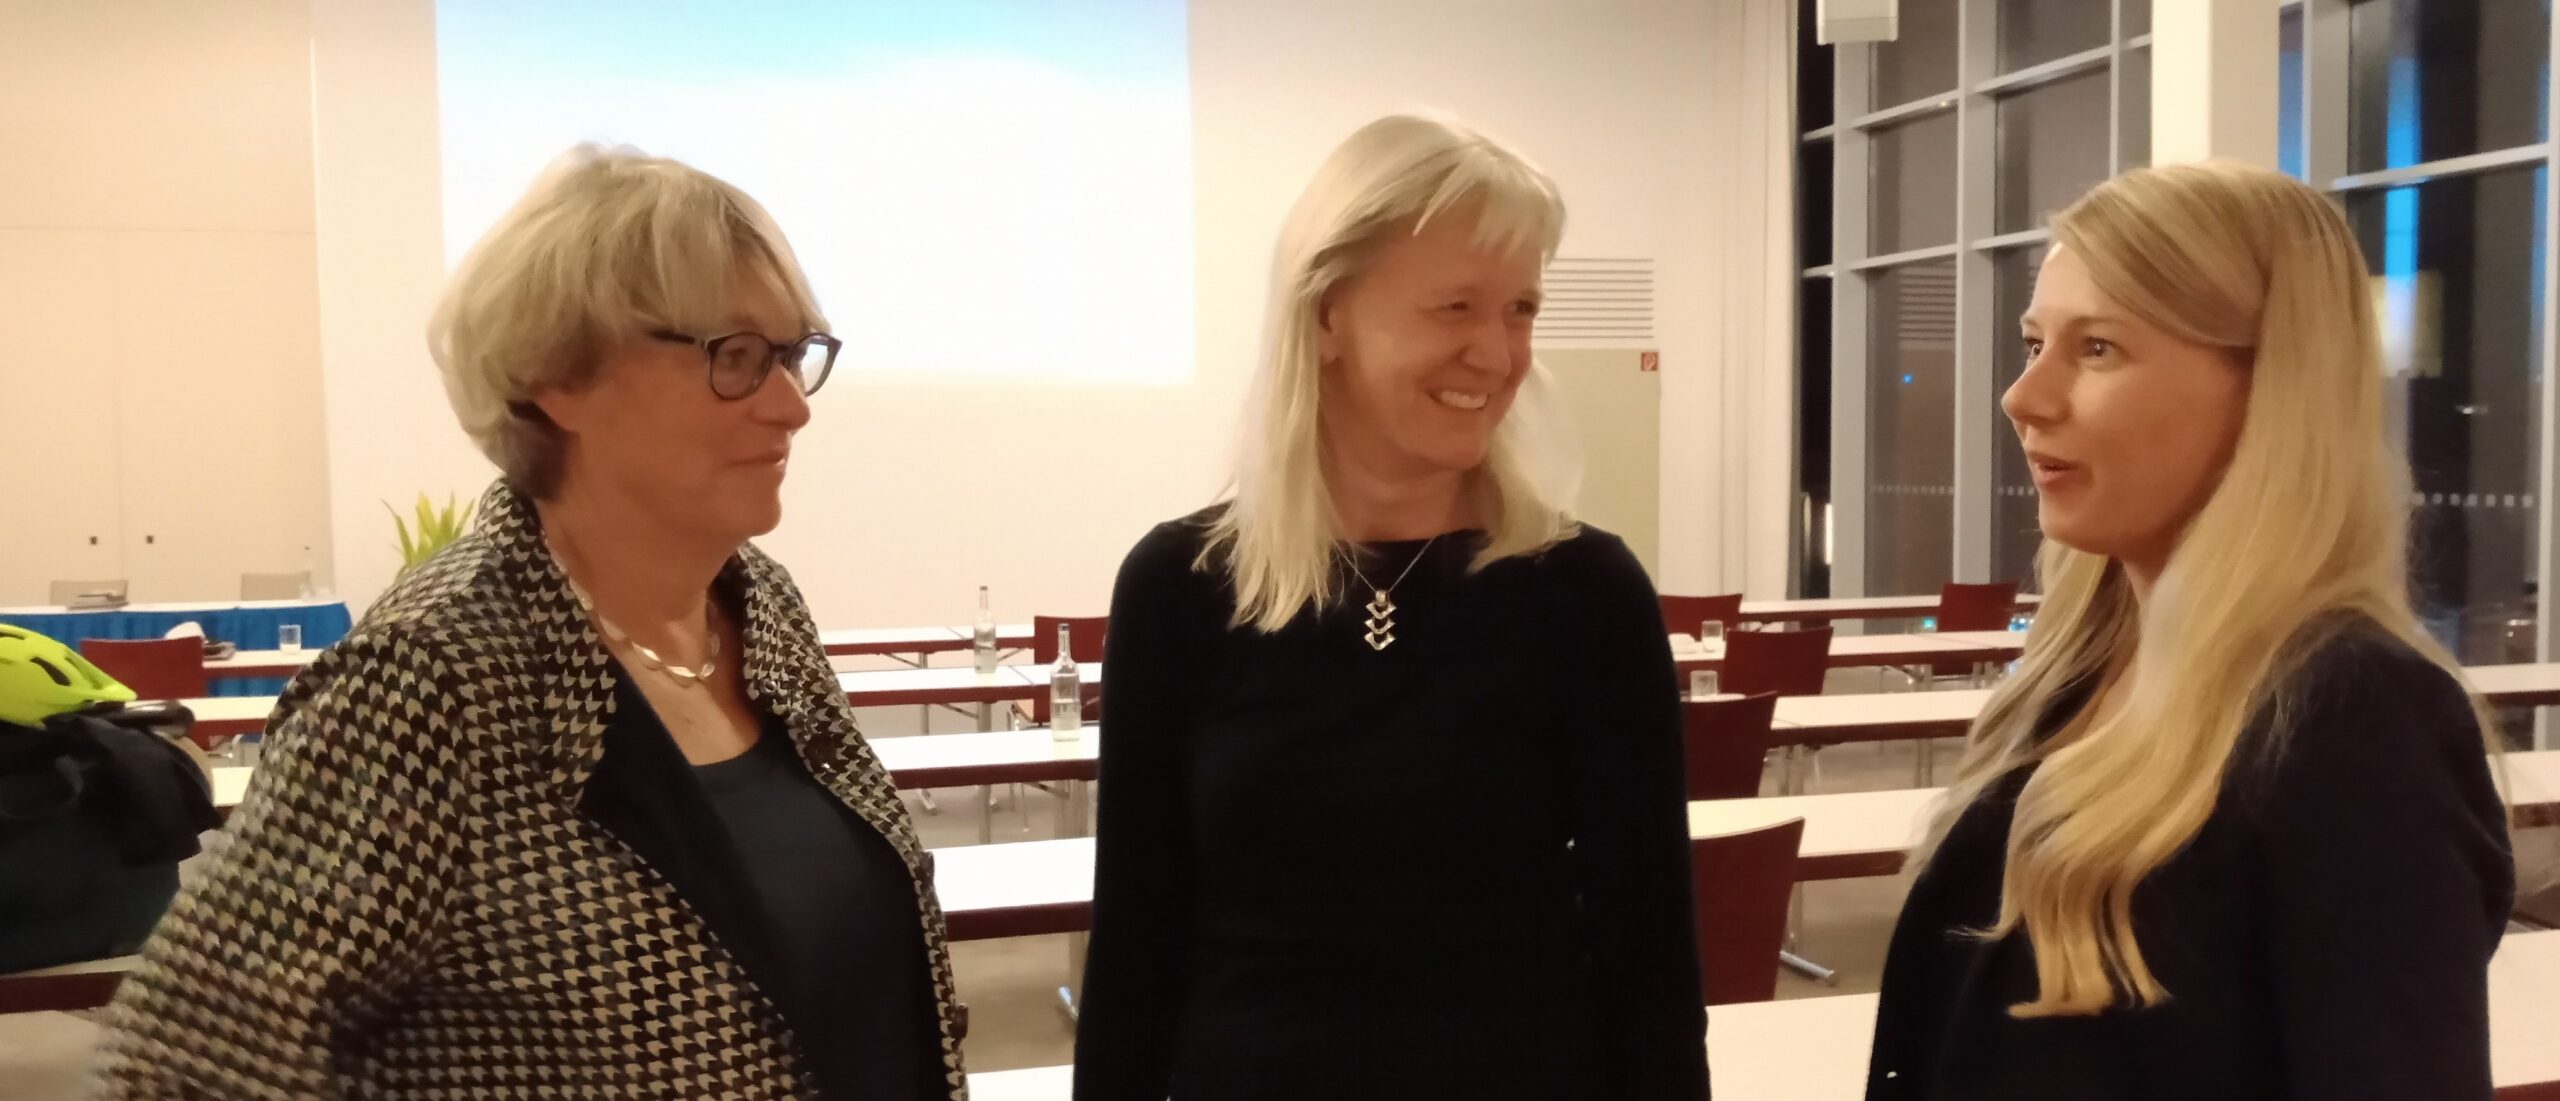 Gisela Tjarks im Gespräch mit den neuen Mitgliedern Ilka Seebeck (Barmer) und Cassandra Fee Berndt (mitKids).